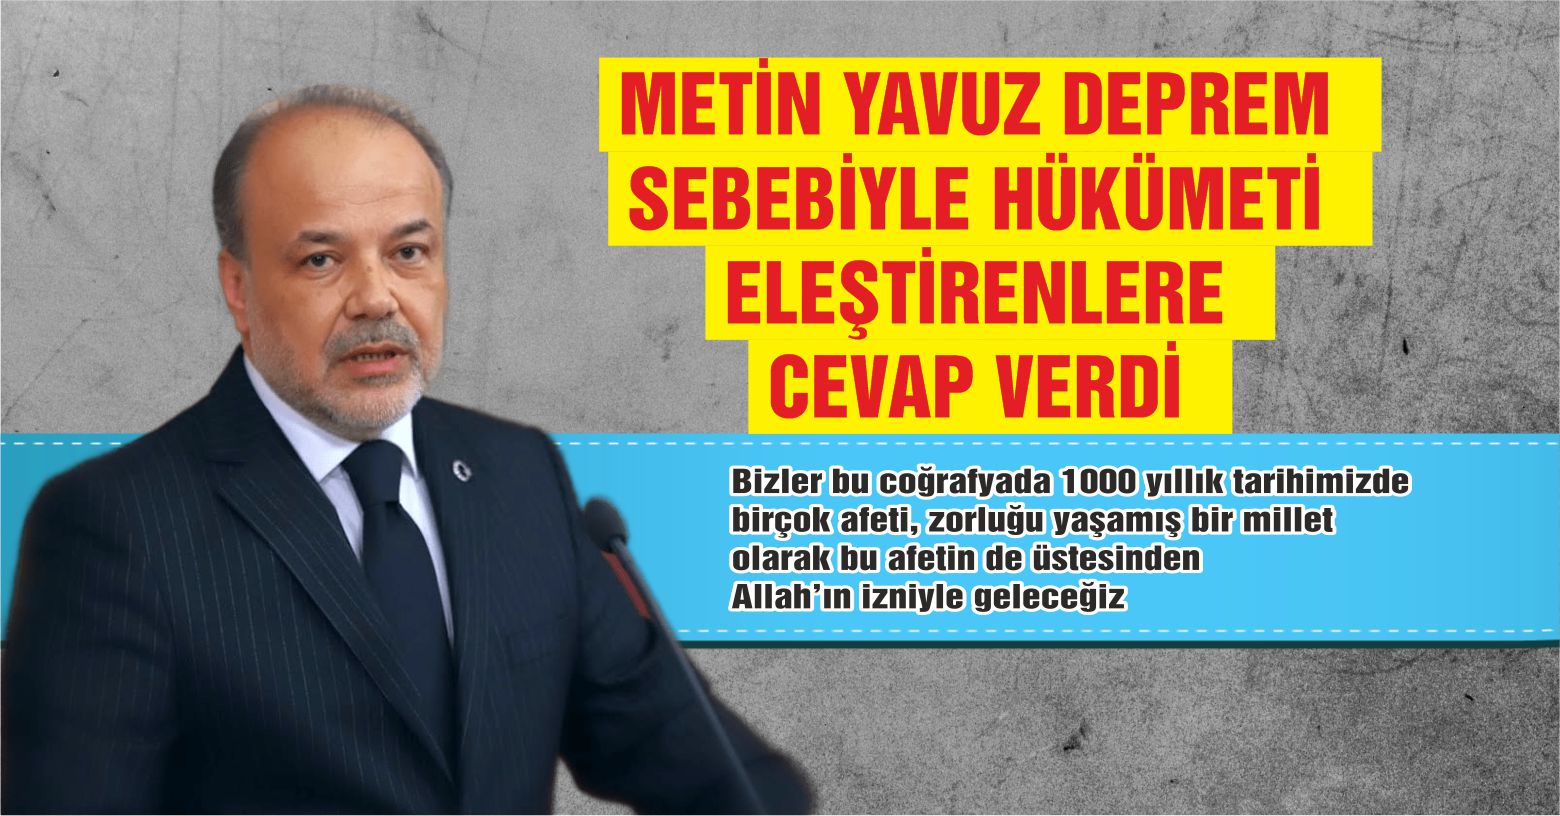 AK Parti Aydın Milletvekili Metin Yavuz, Deprem Sebebiyle Hükümete Yöneltilen Eleştirilere Yanıt Verdi